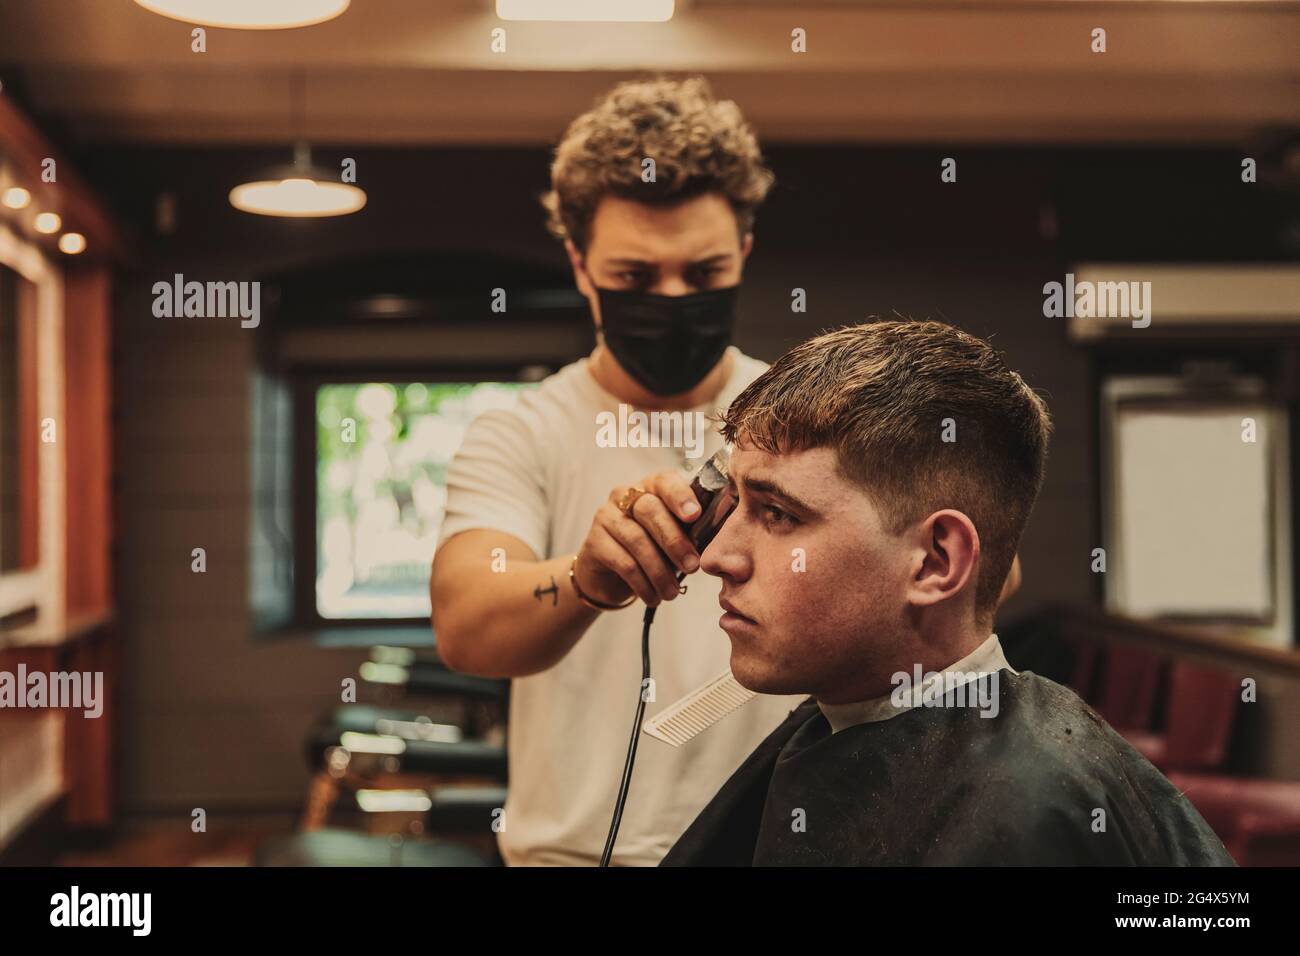 Junger Mann, der während des COVID-19-Ausbruchs vom männlichen Friseur im Salon einen Haarschnitt erhalten hat Stockfoto